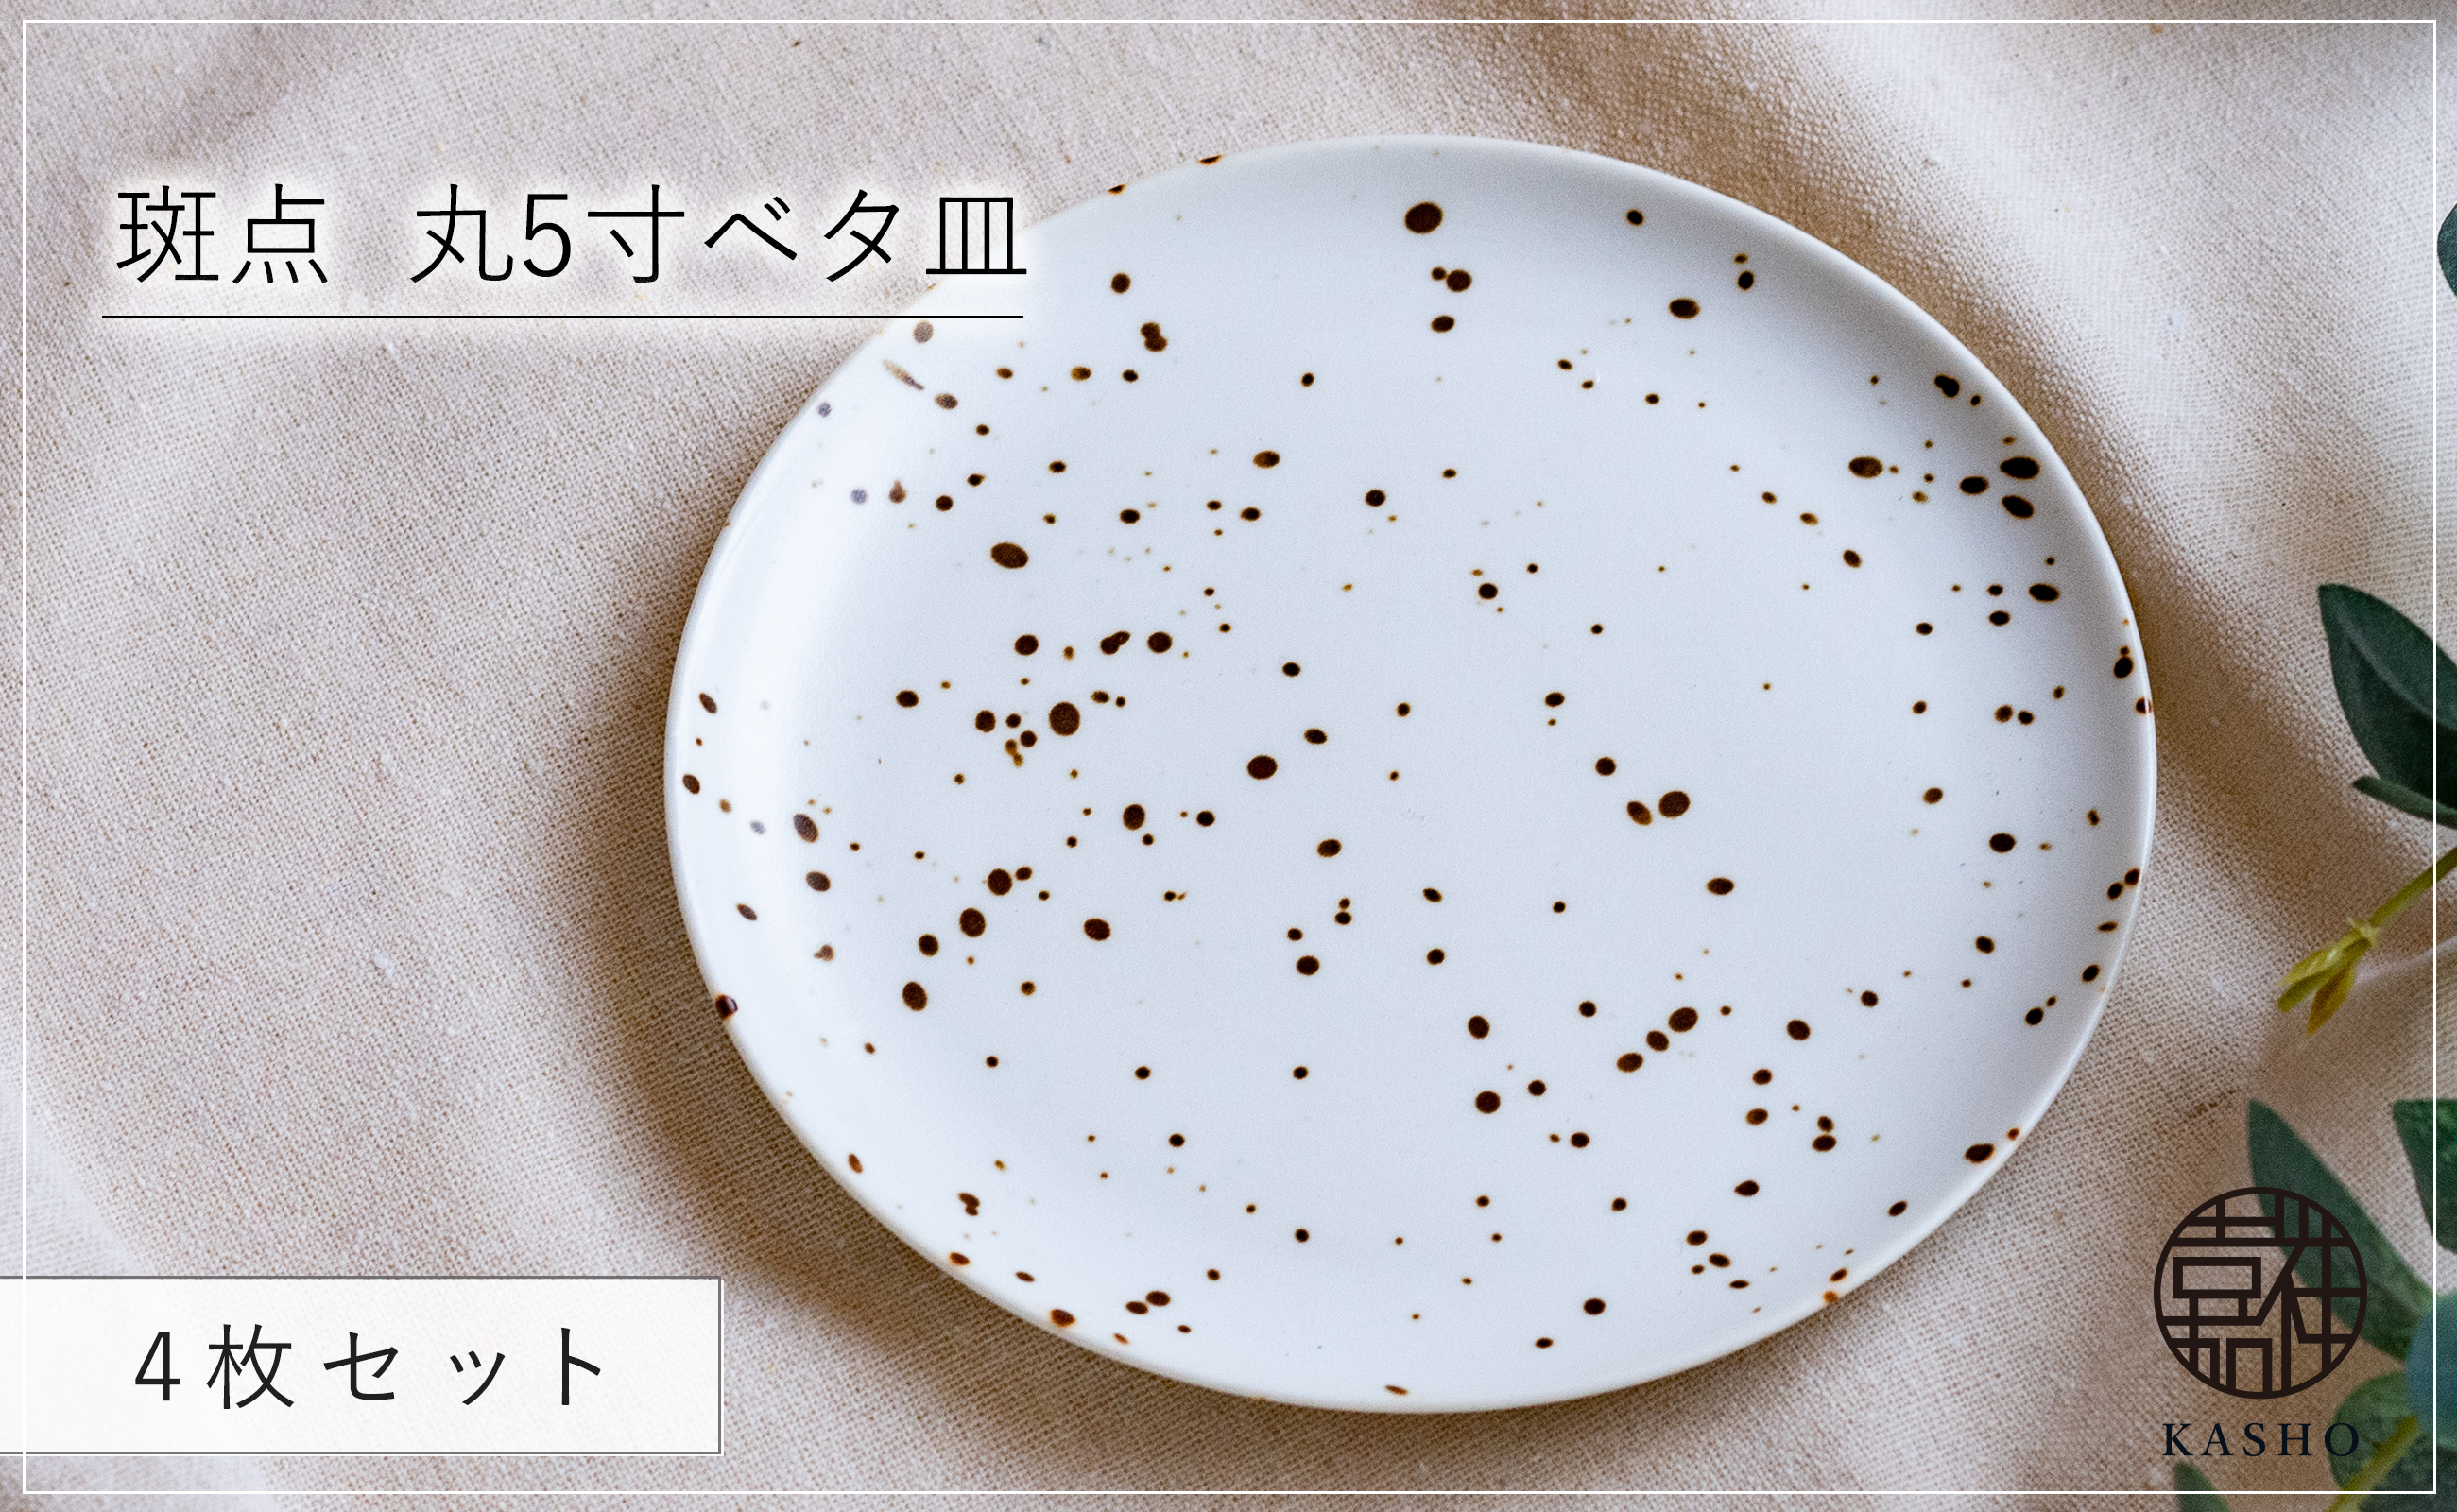 〈平戸嘉祥窯〉斑点 丸5寸ベタ皿 4枚セット 取り皿 ケーキ皿 パン皿 食器 皿